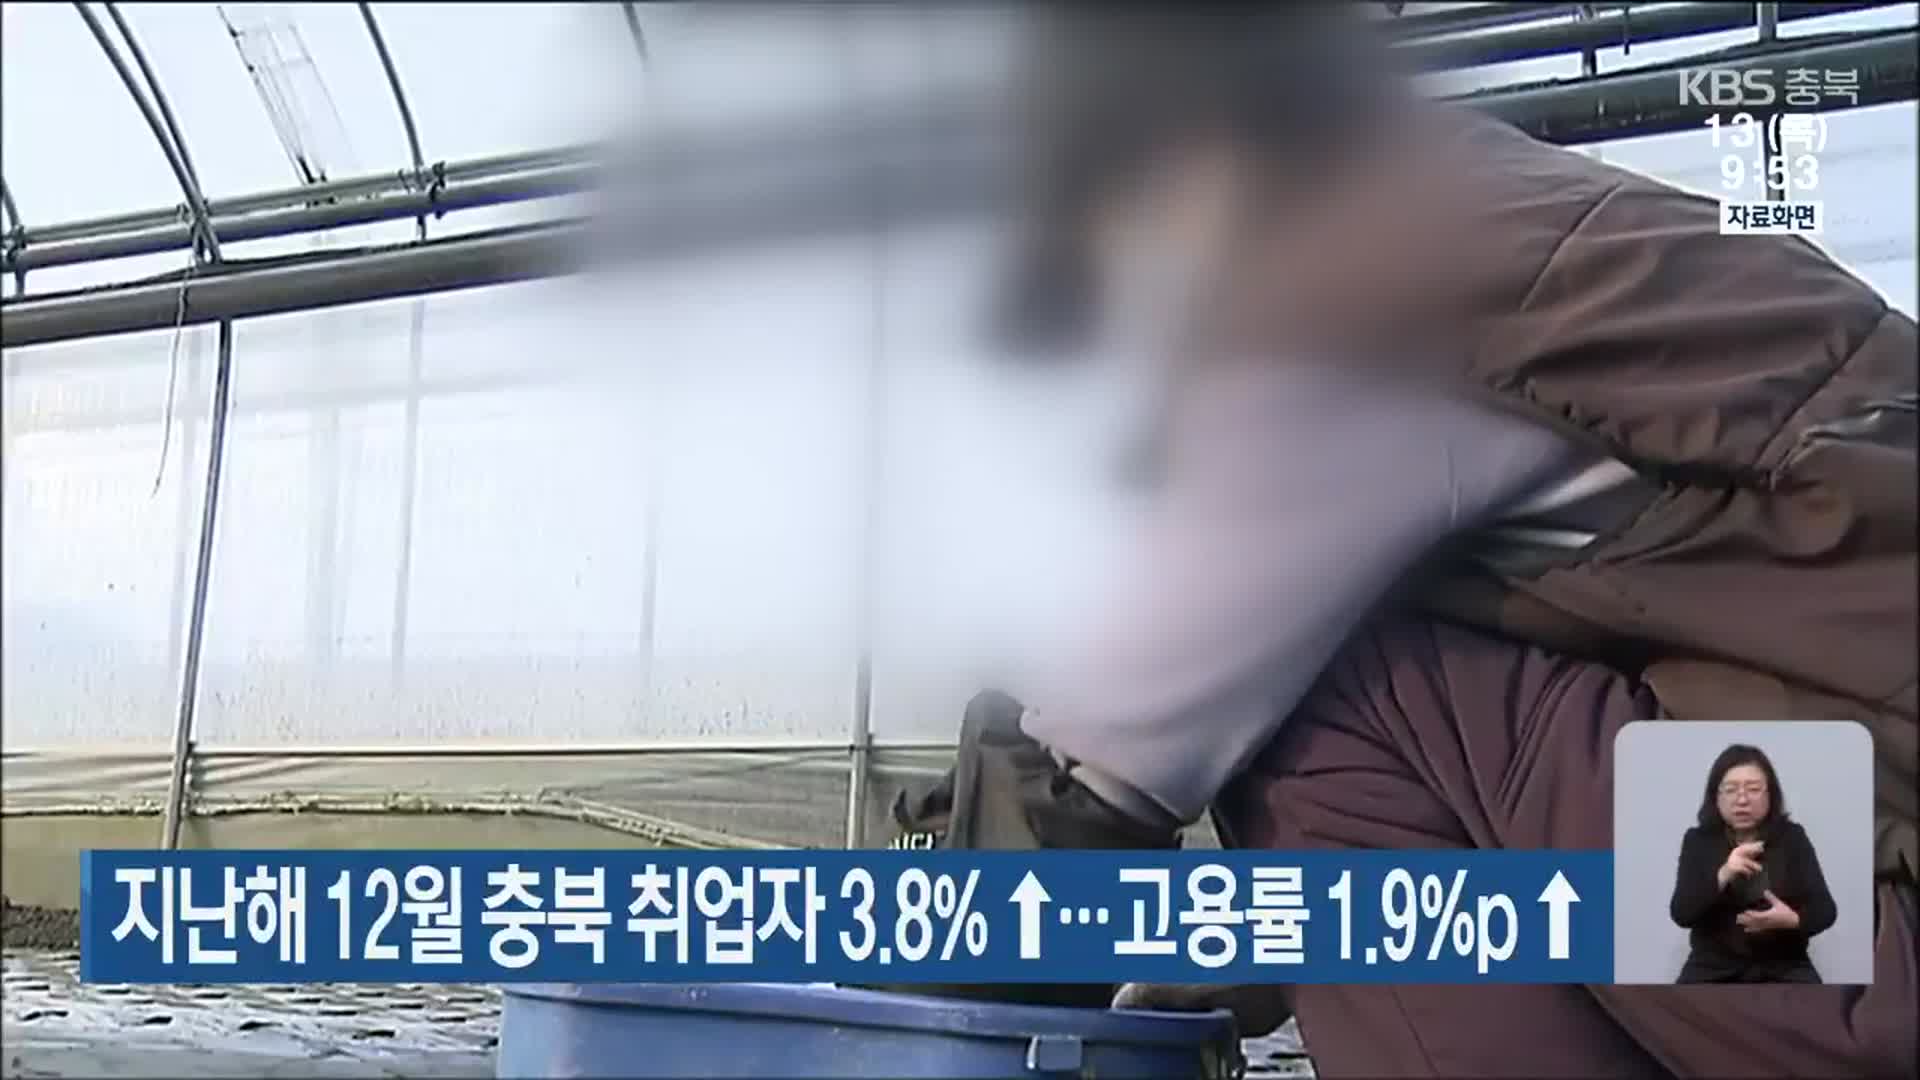 지난해 12월 충북 취업자 3.8%↑…고용률 1.9%p↑